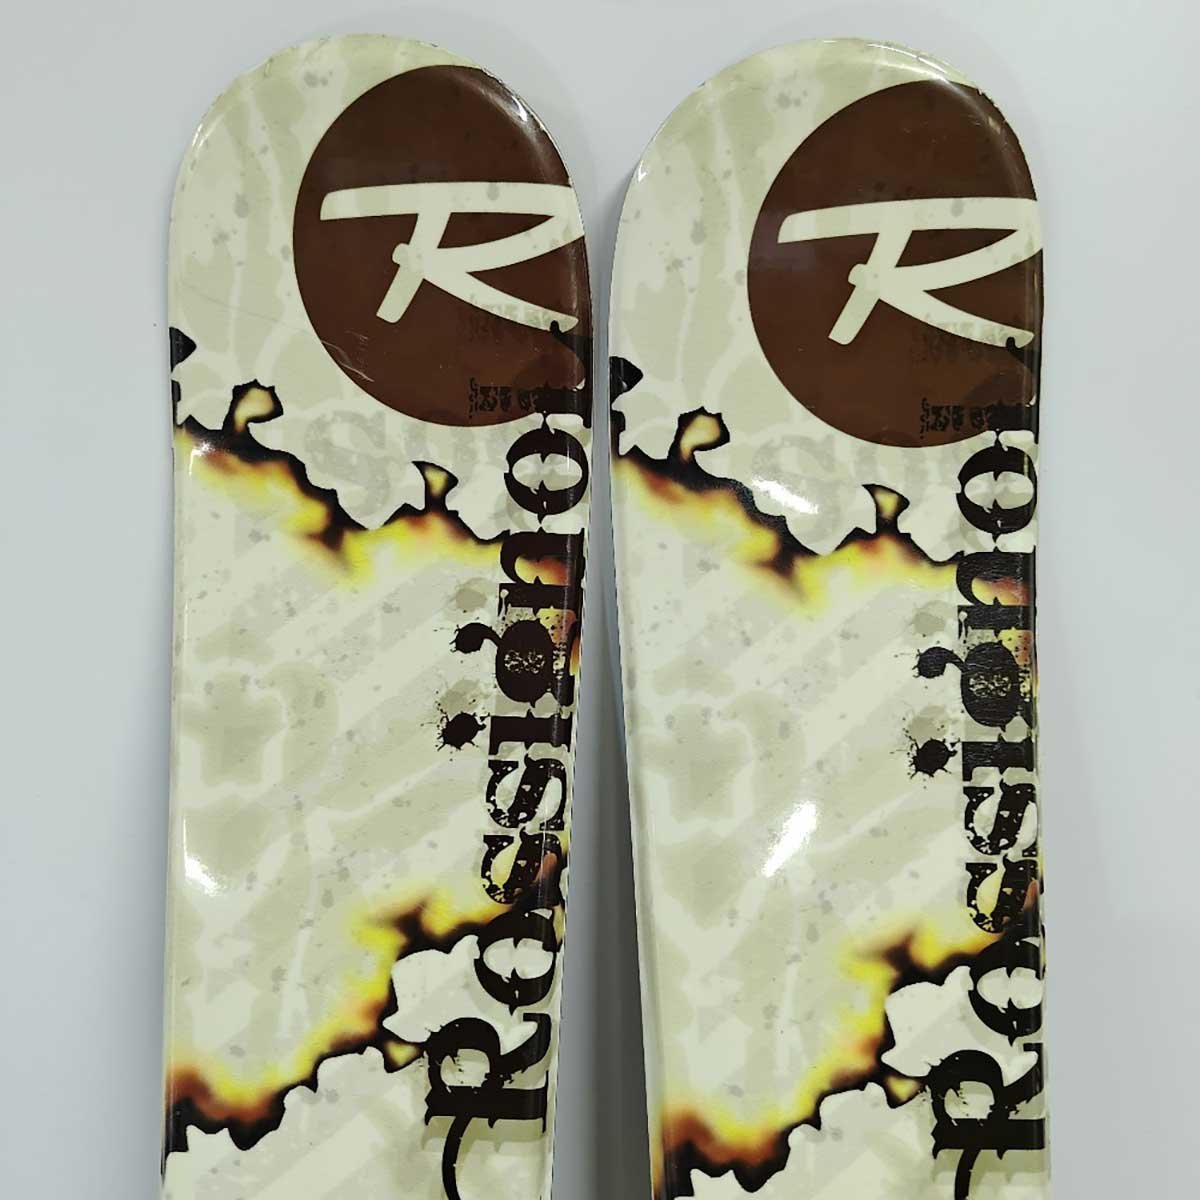 【中古】ロシニョール S99 ショートスキー ファンスキー スキーブレード スキーボード 99cm ROSSIGNOL Look TYPE NX LEVEL 10 ケース付き_画像2